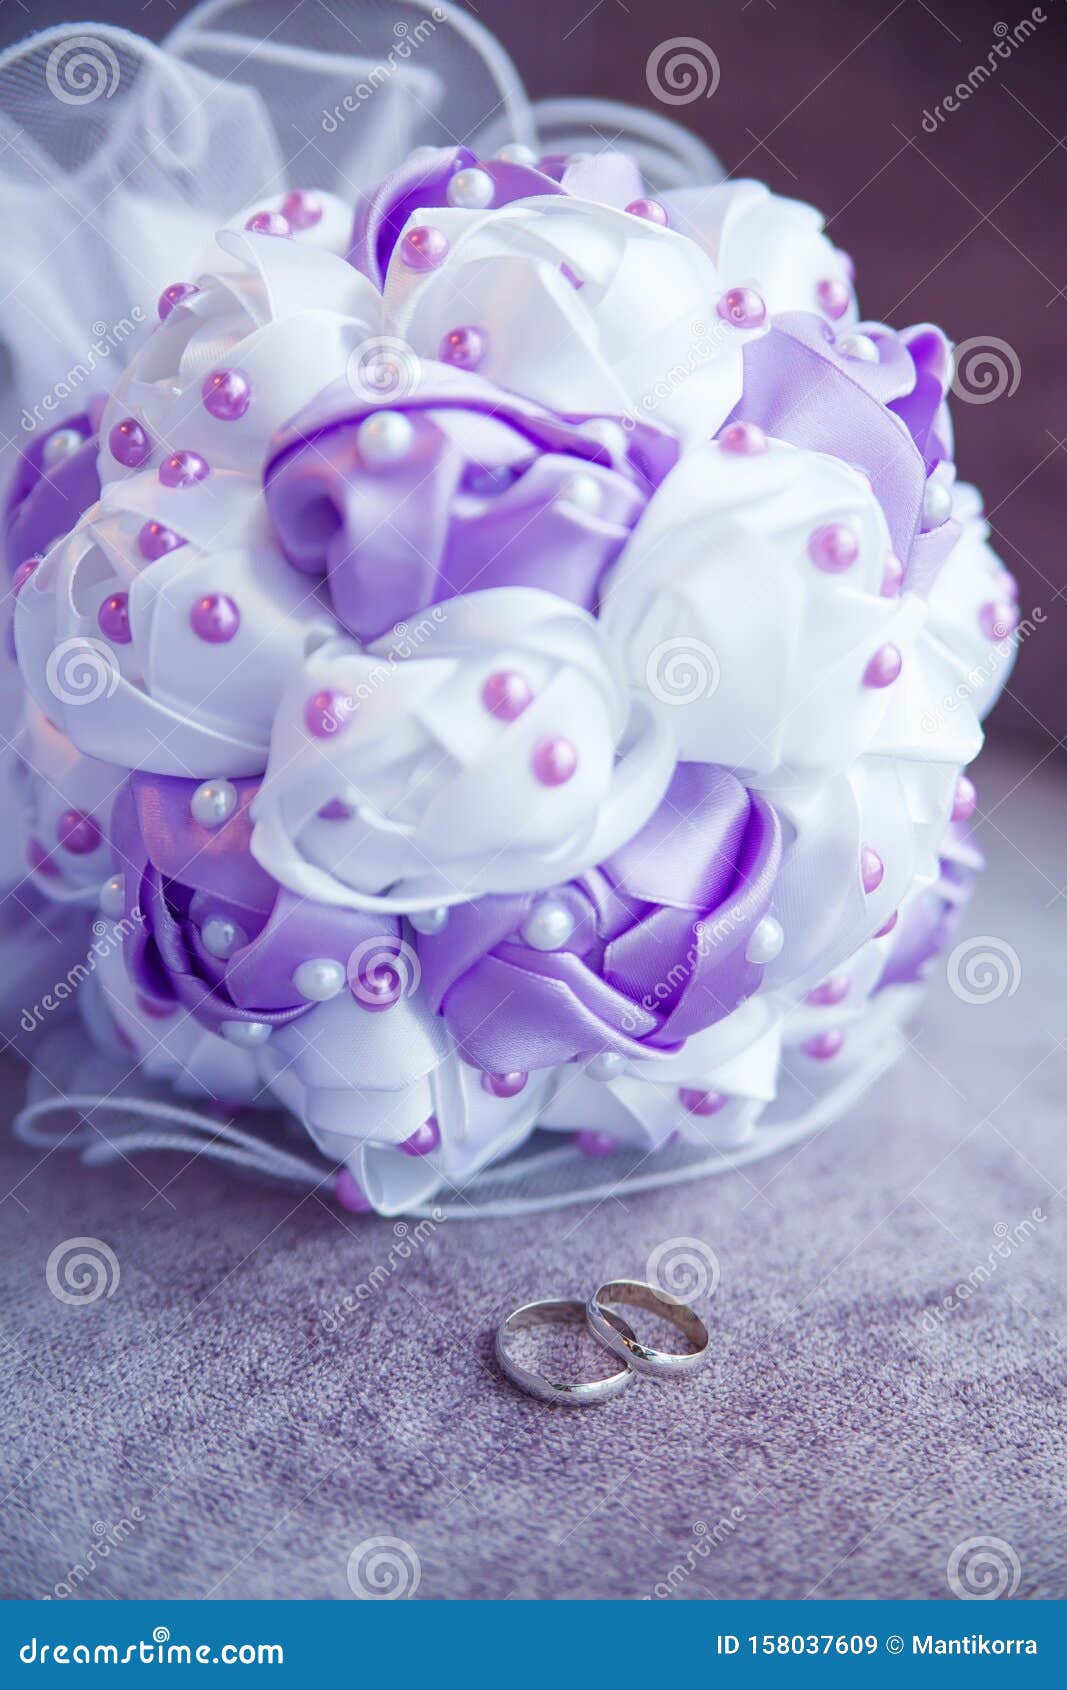 Với nhẫn cưới bạc và bó hoa cưới được bố trí trên nền tím, hình ảnh này chắc chắn sẽ làm say đắm các cặp đôi đang chuẩn bị cho ngày trọng đại của mình. Đường nét tinh tế và màu sắc hài hoà, tạo nên một thiết kế thiên về vẻ đẹp sang trọng, tinh tế.